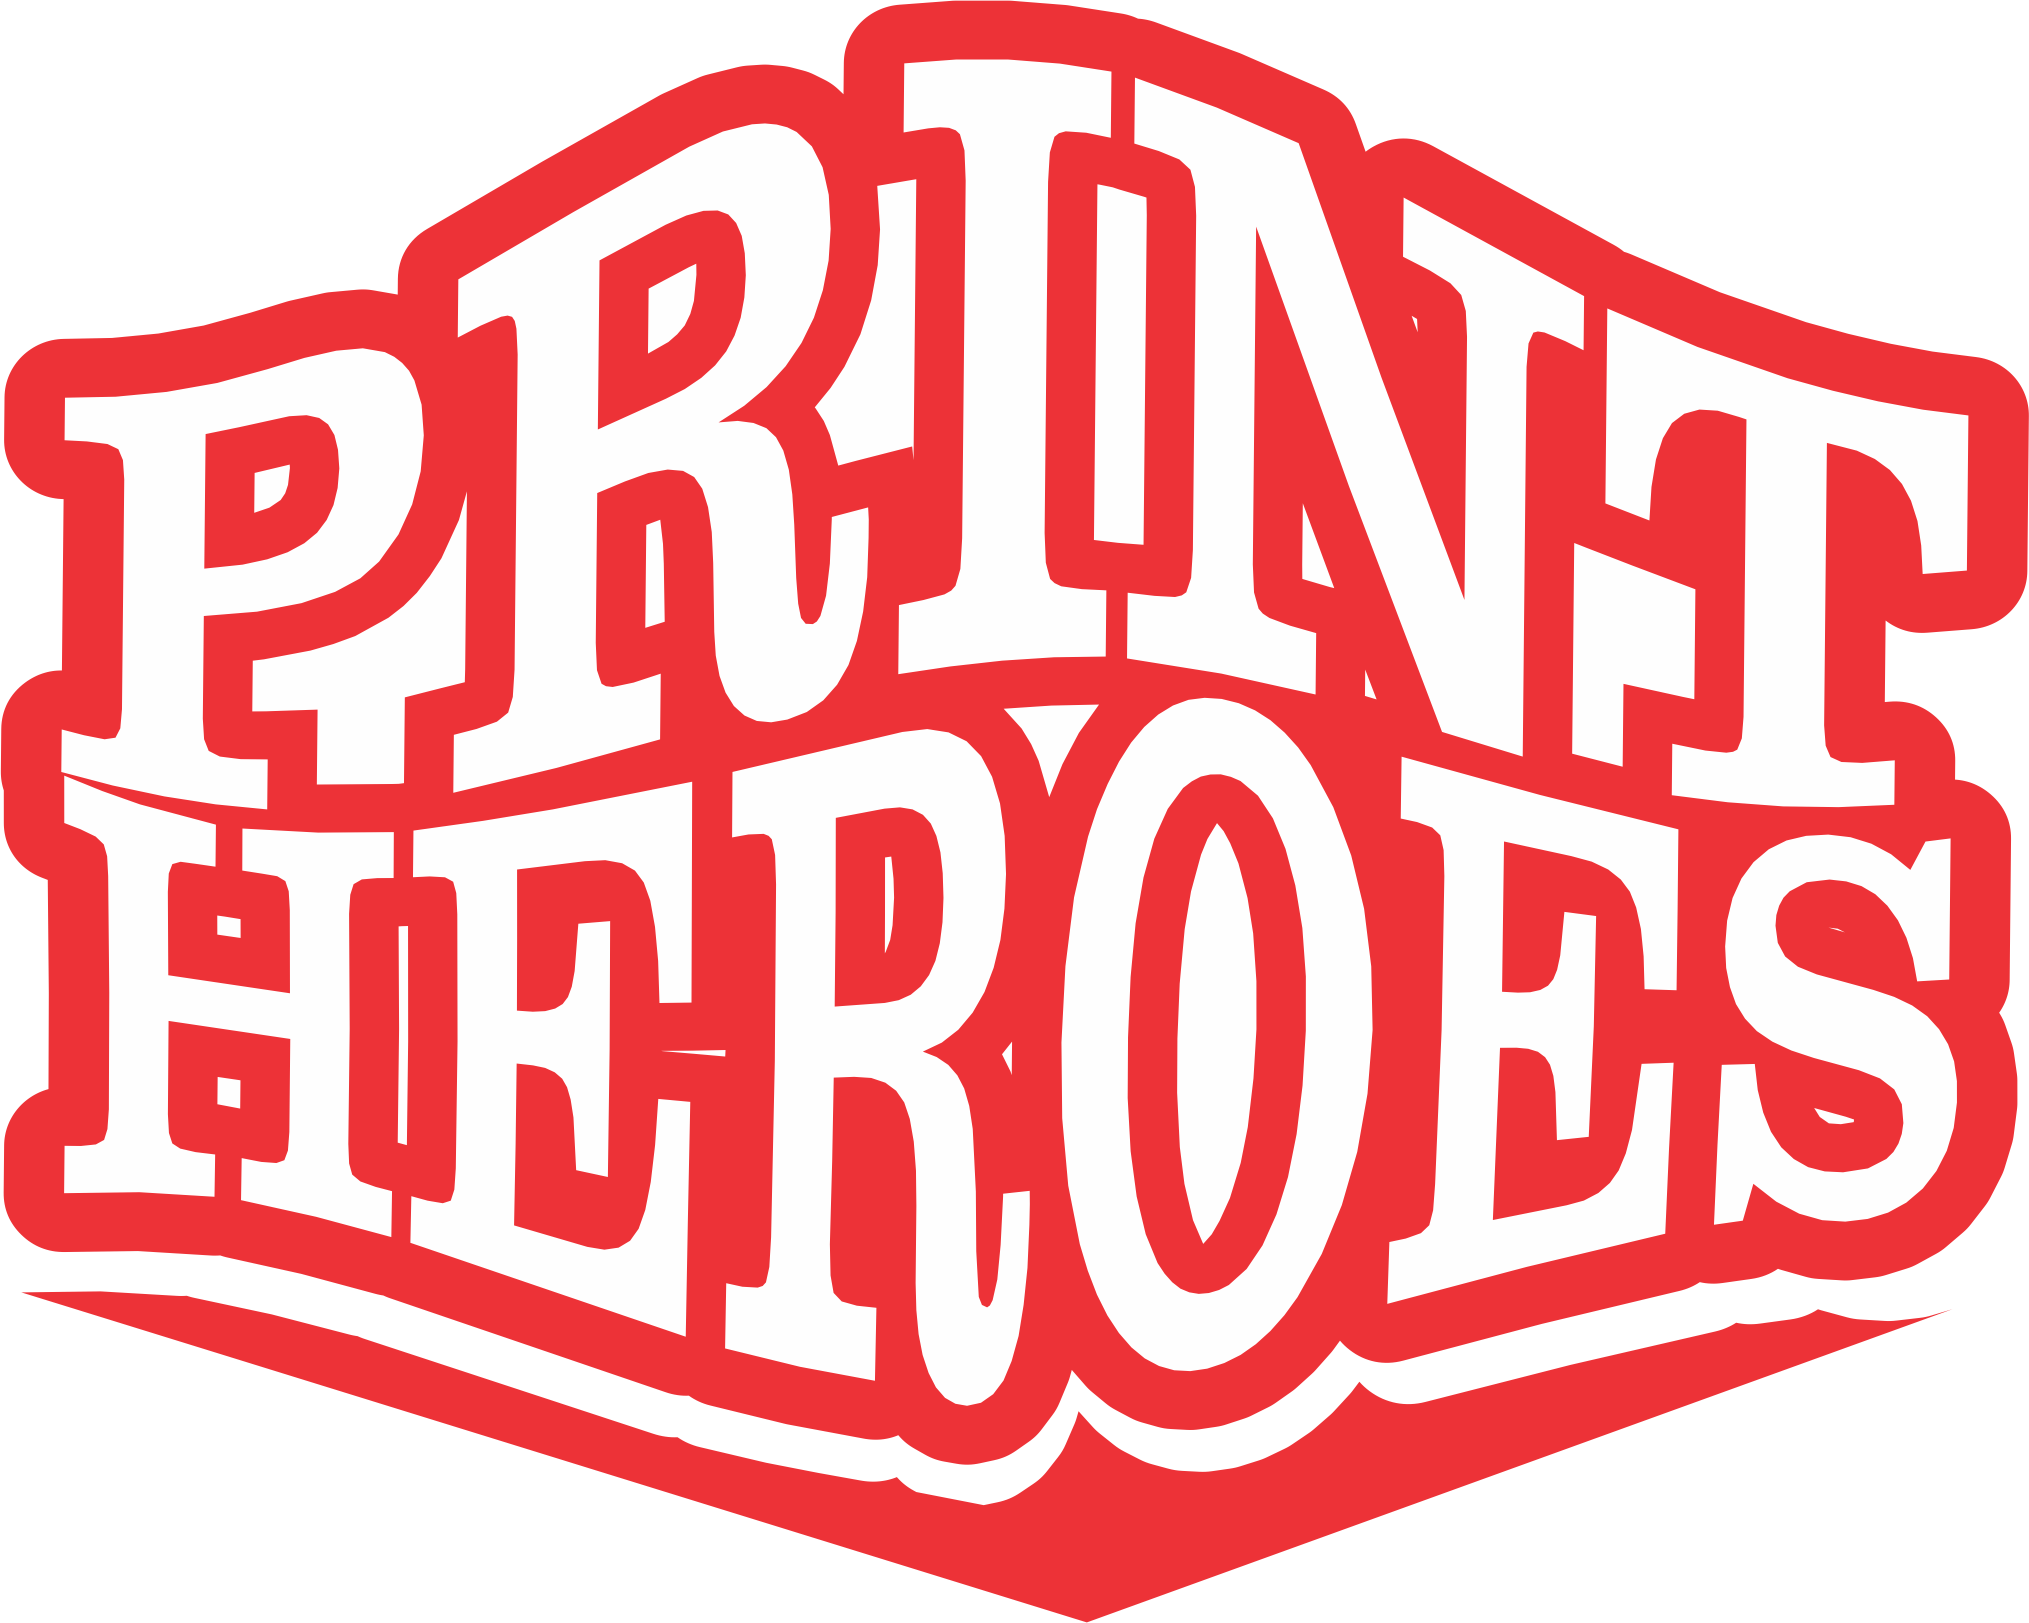 Print Heroes